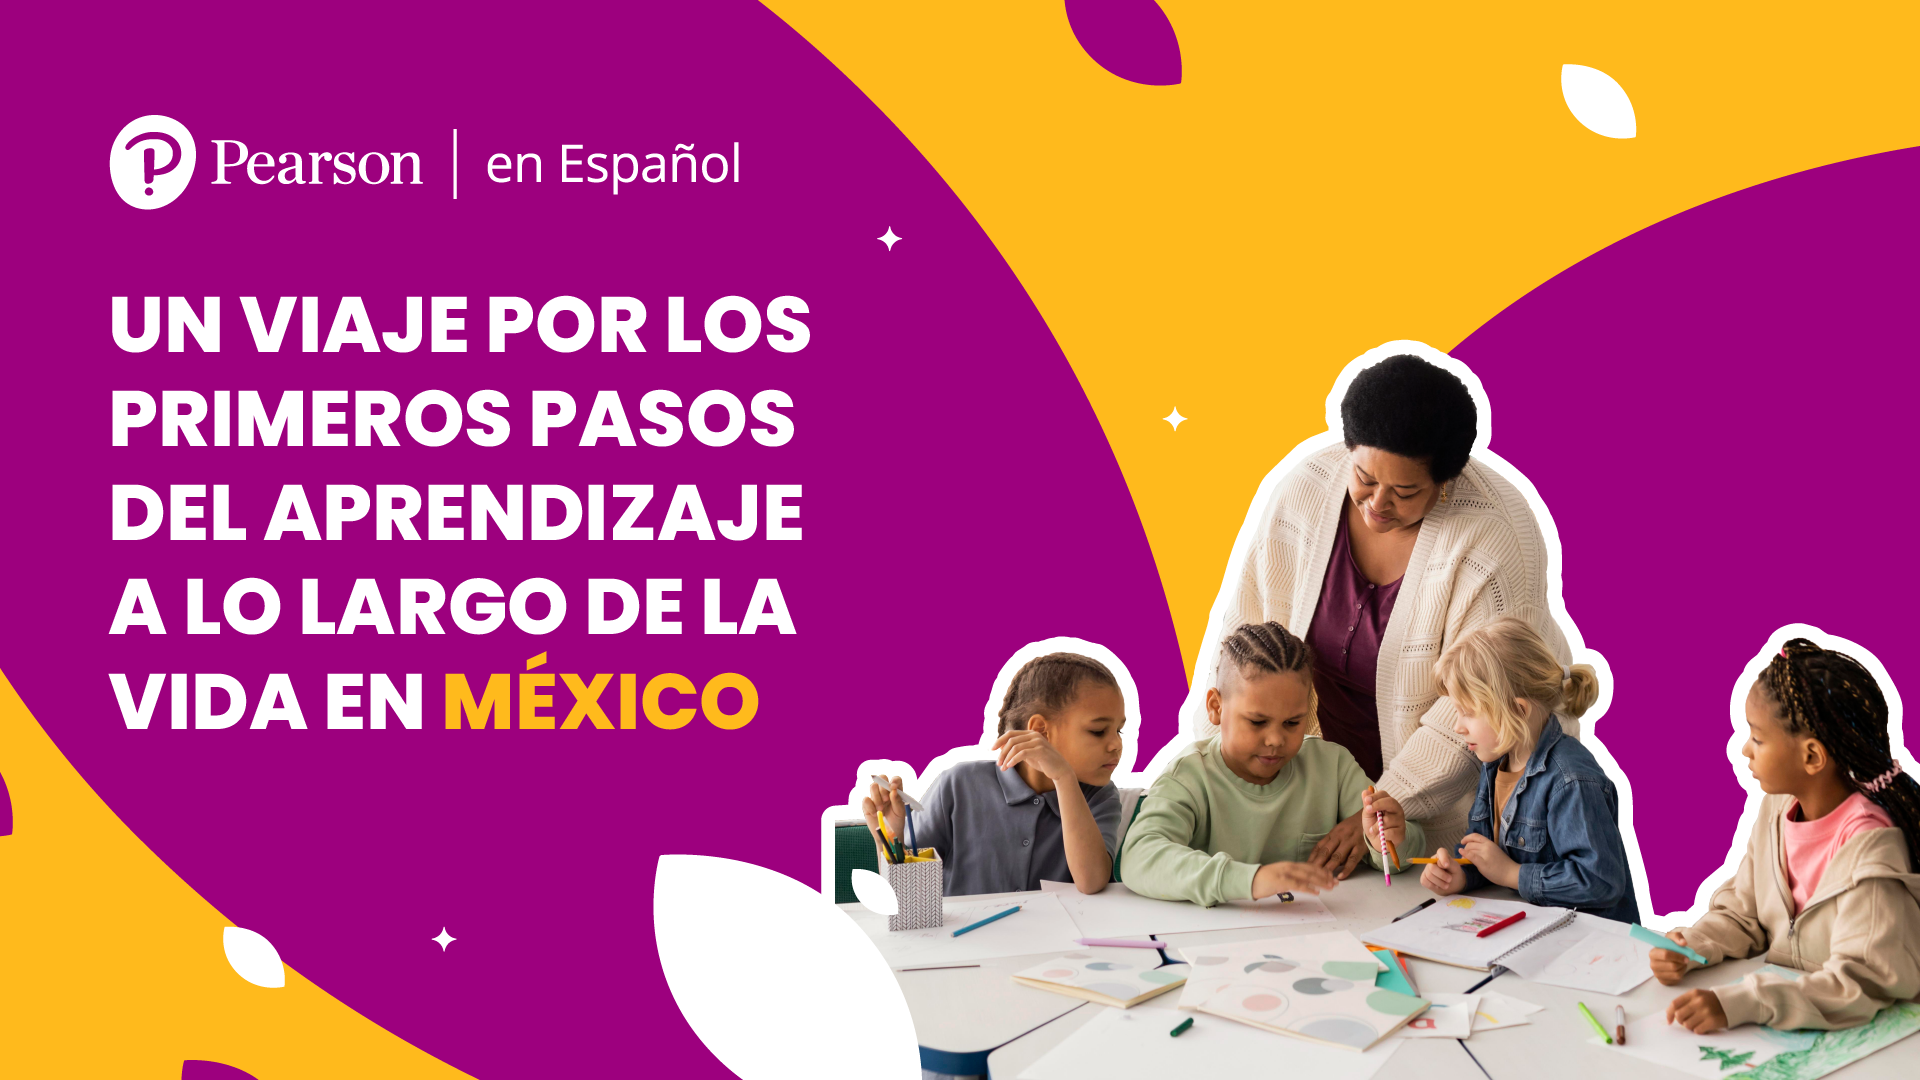 Un viaje por los primeros pasos del aprendizaje a lo largo de la vida en México - Pearson